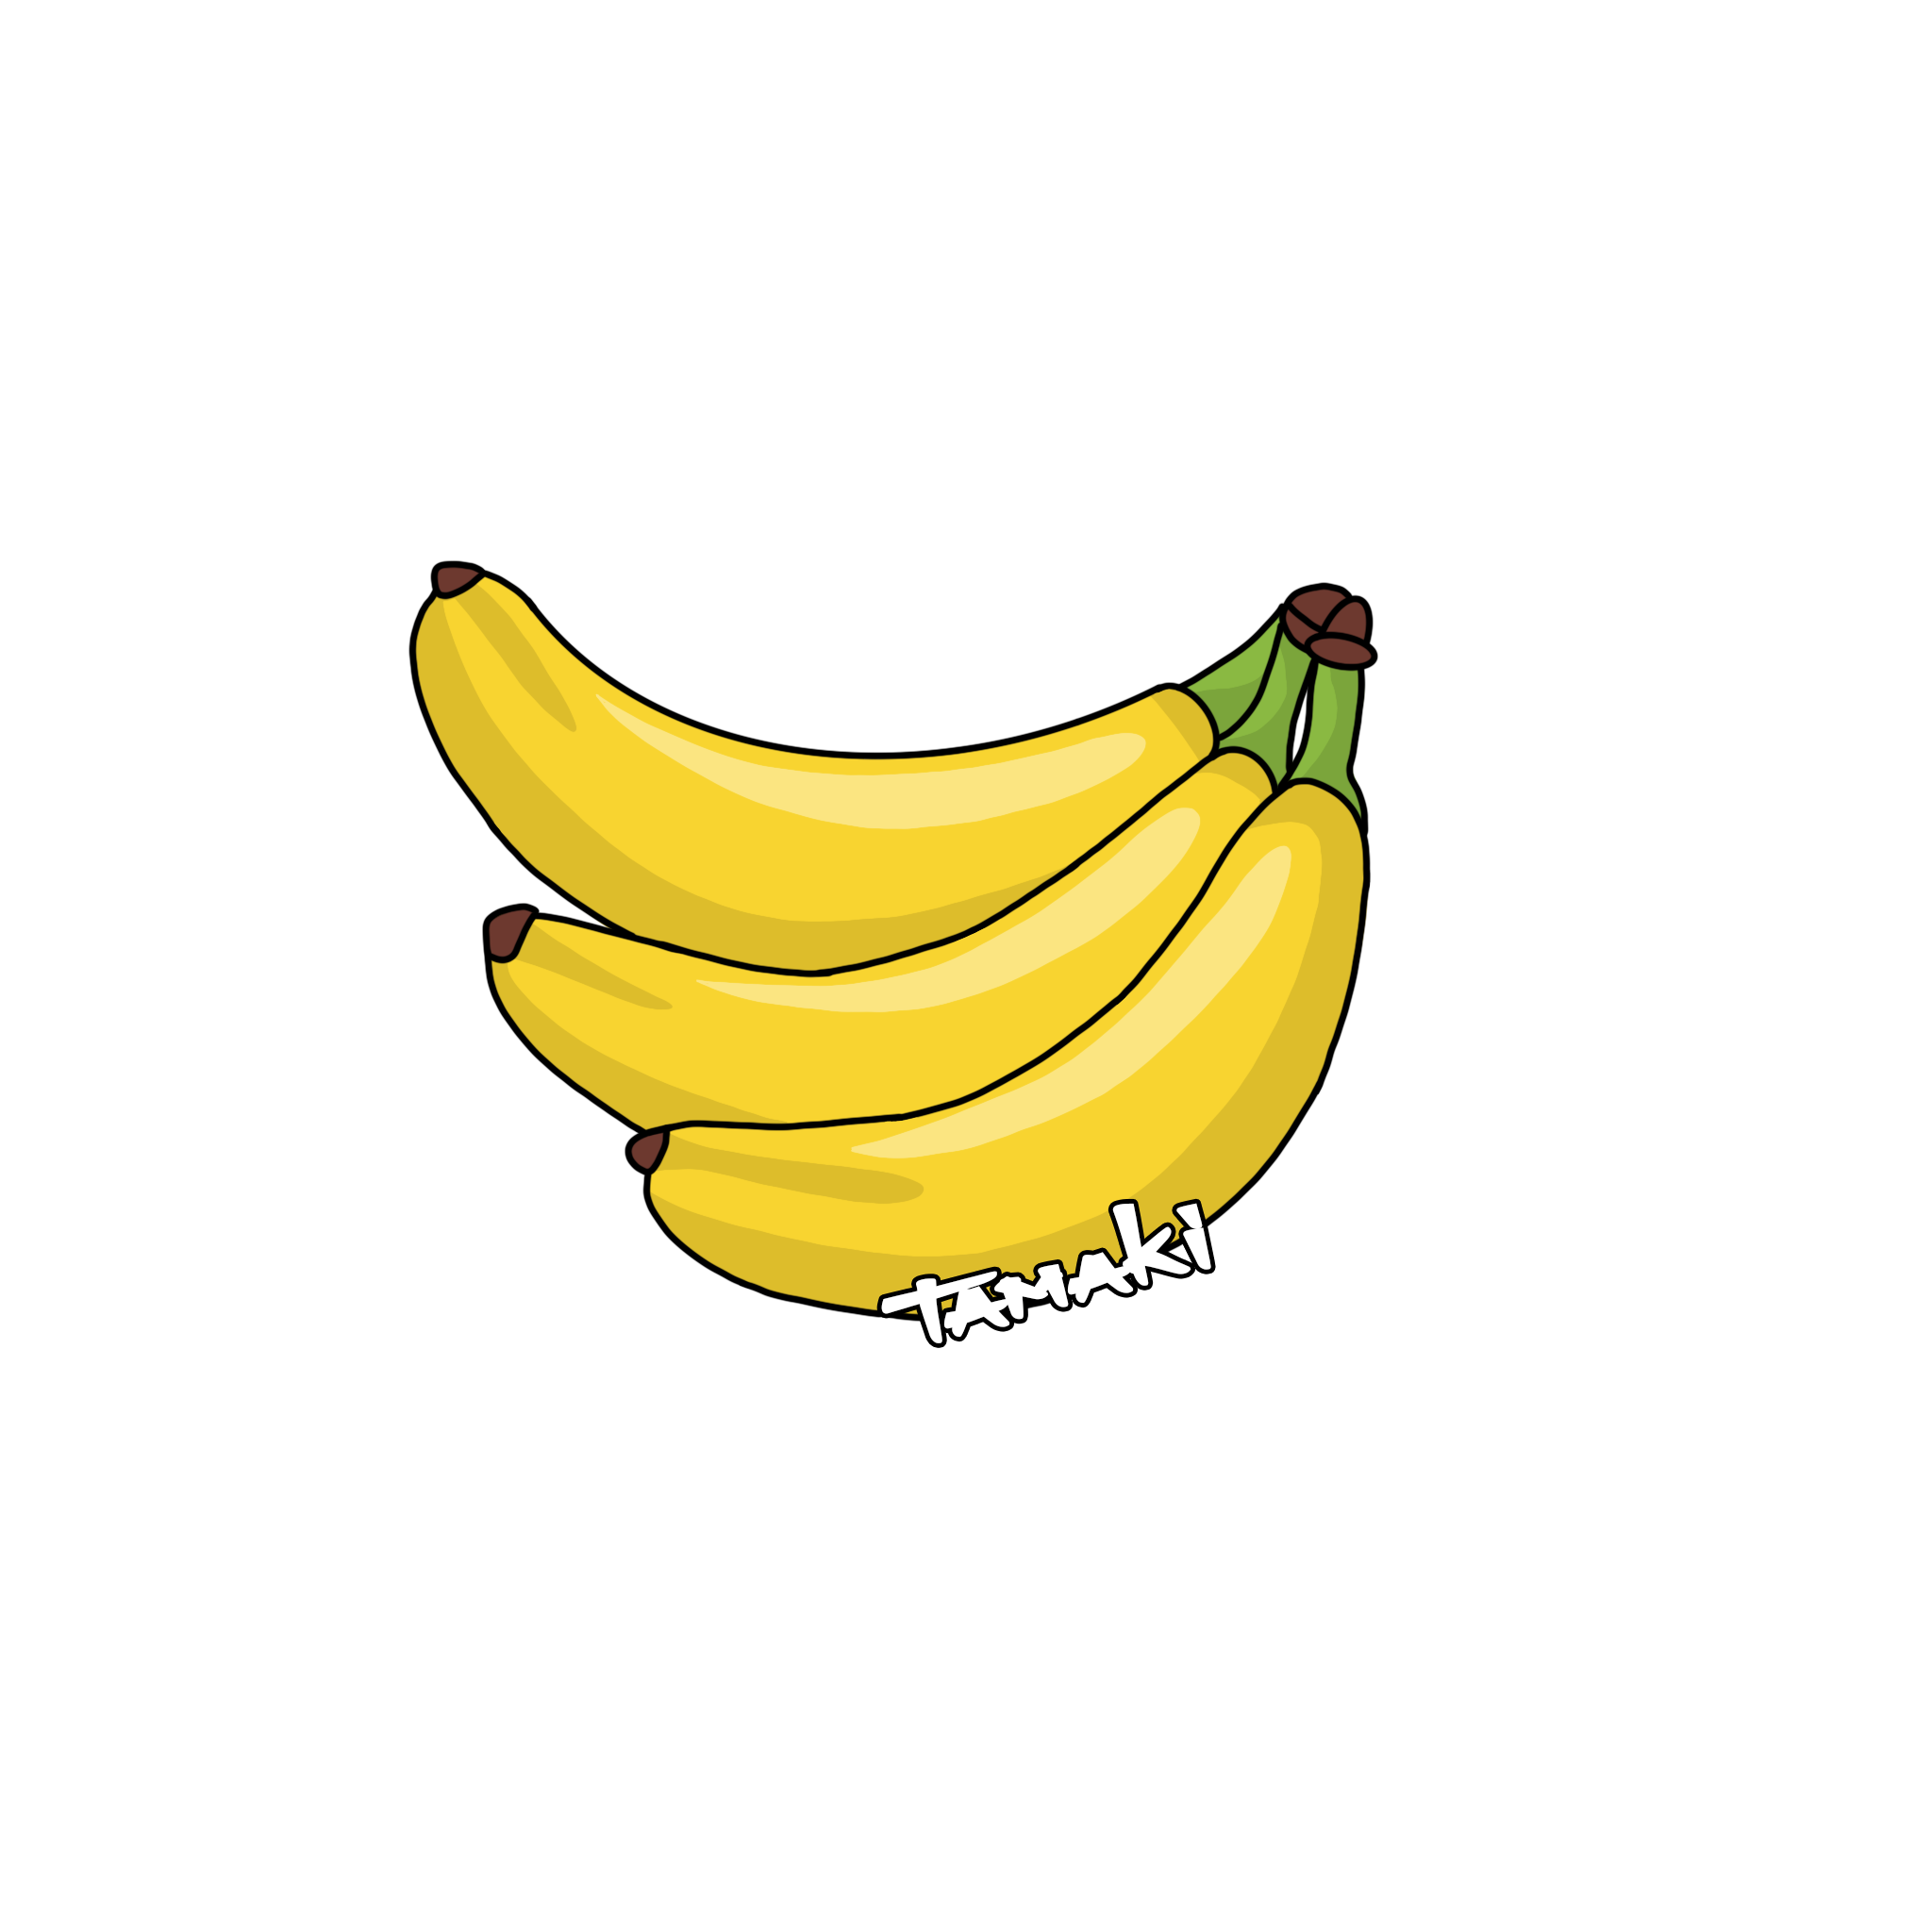 Tamaki Banana